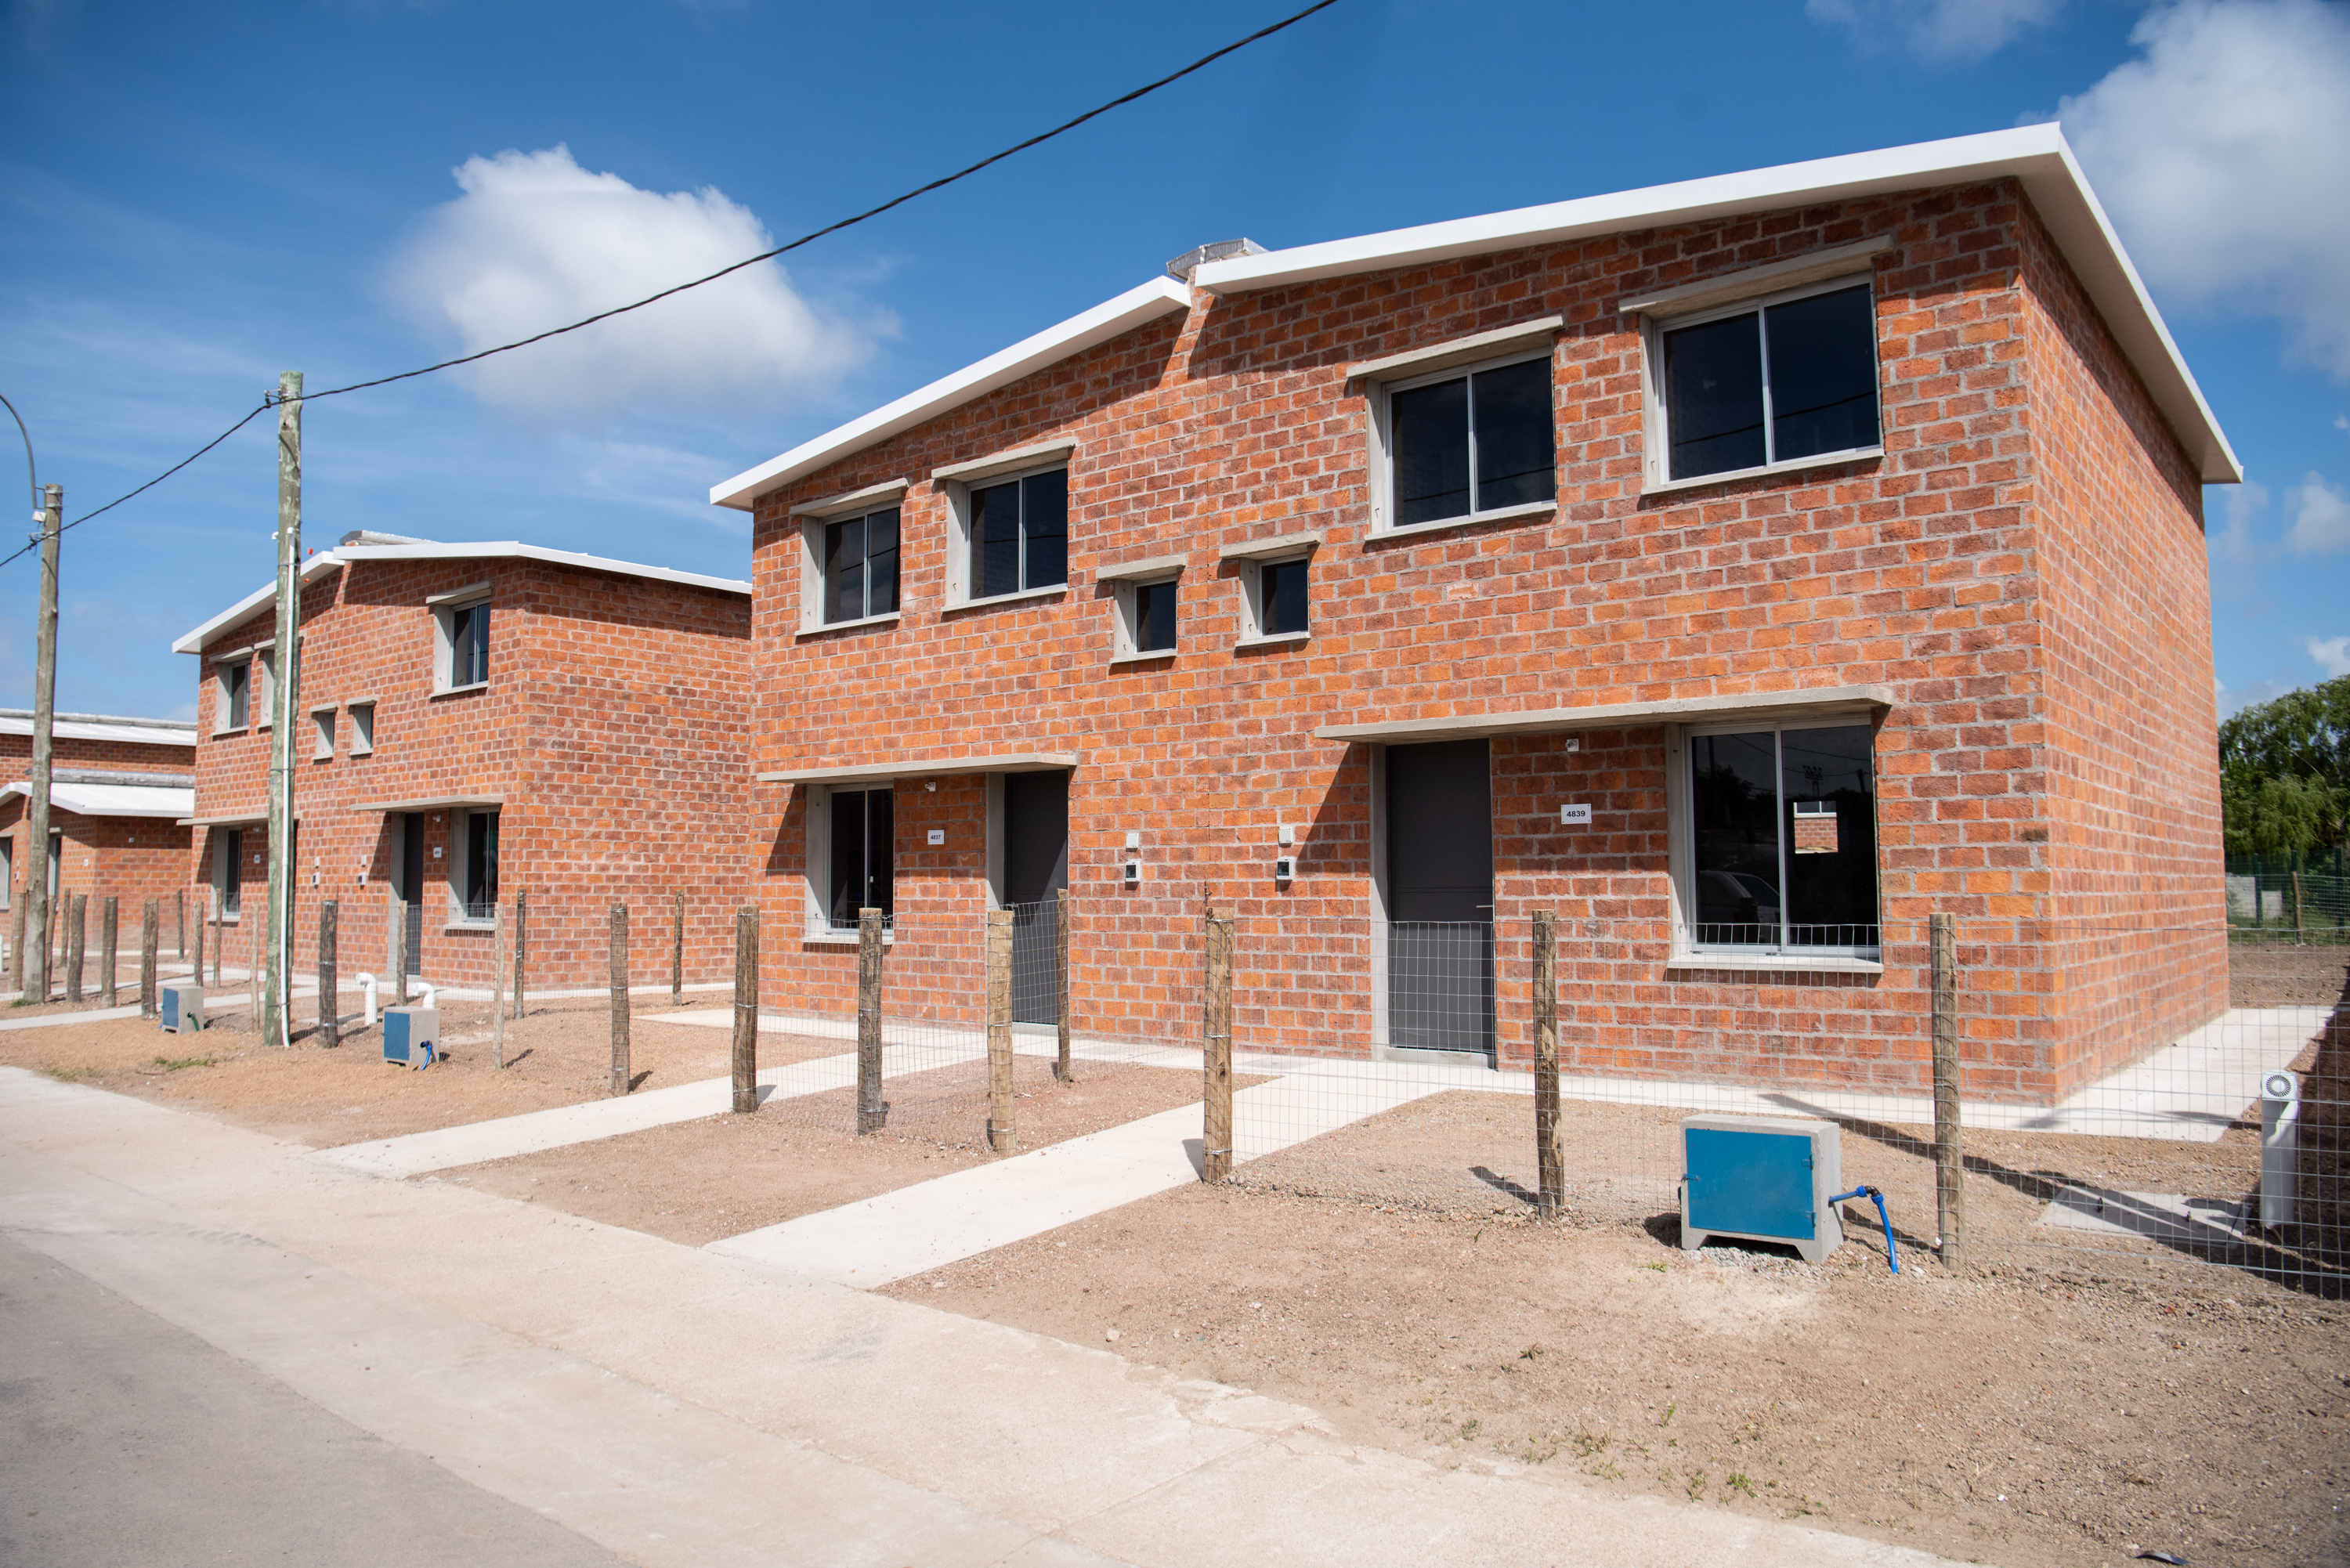 Entrega de viviendas a familias del barrio La Paloma, 17 de octubre de 2022